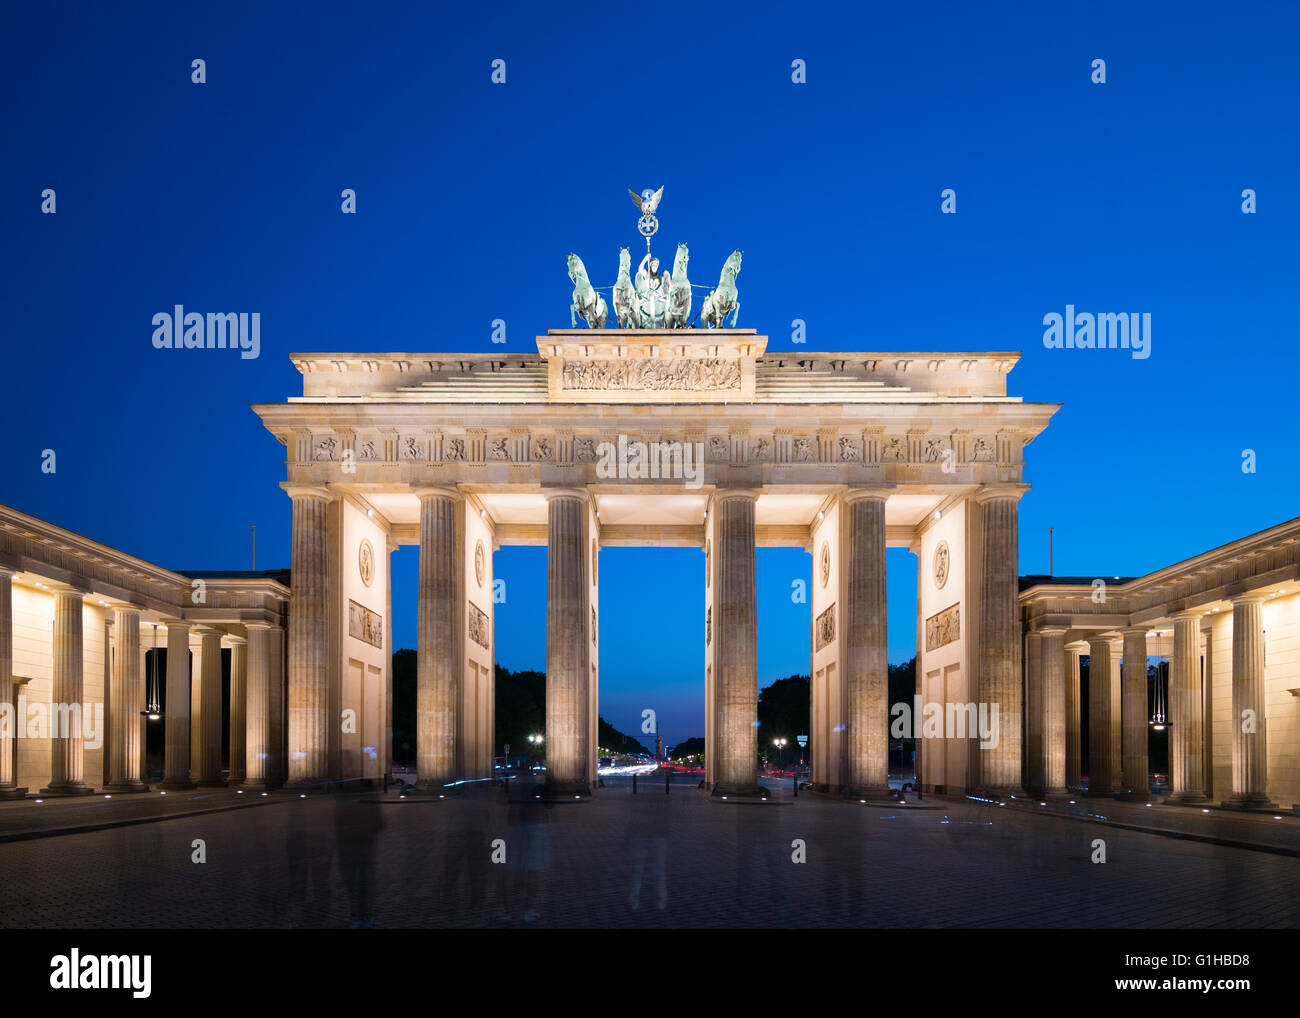 La porte de Brandebourg dans la soirée à Berlin Allemagne Banque D'Images